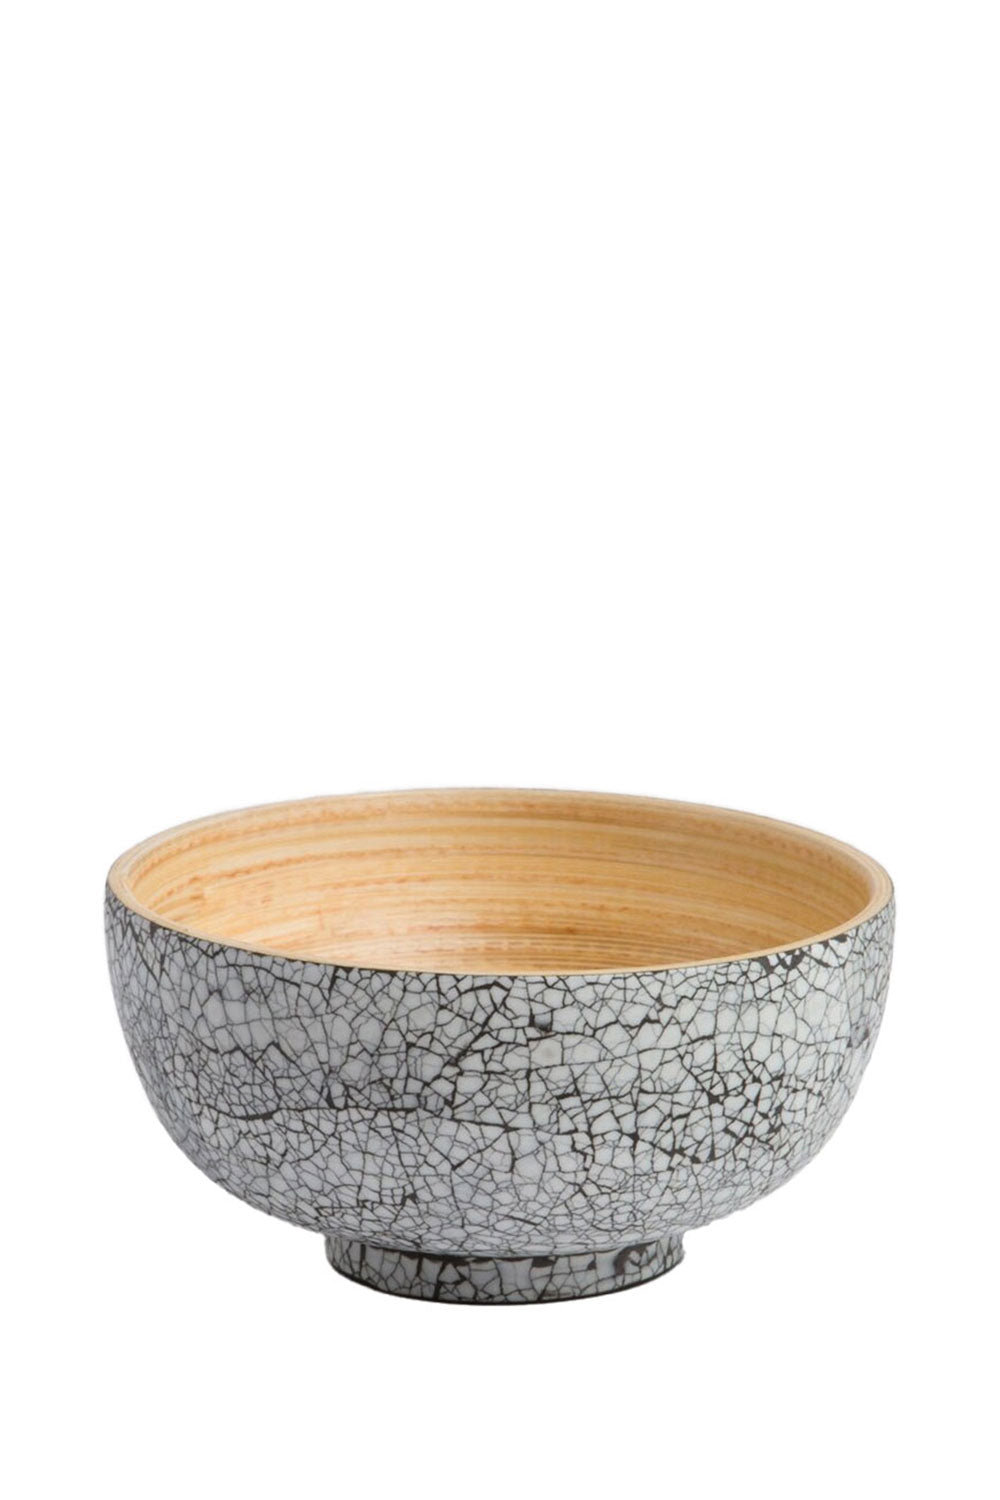 TIEN Eggshell Bamboo Bowl, 16 cm - Maison7